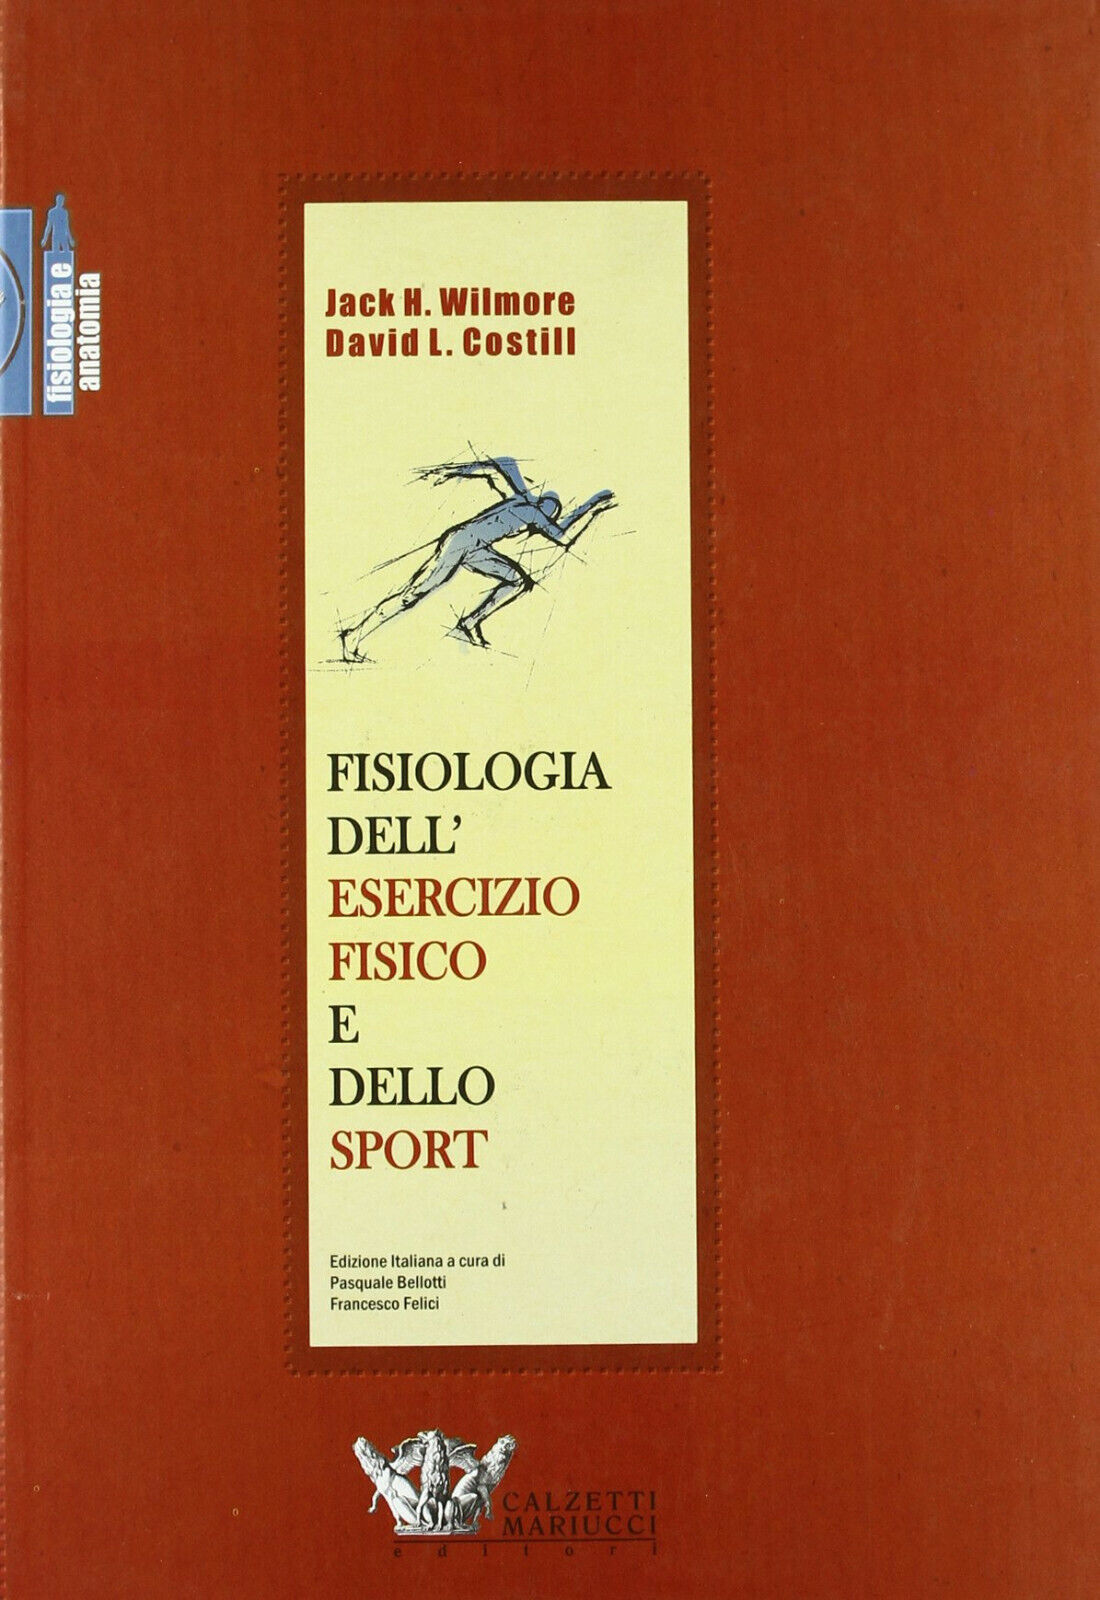 Fisiologia dell'esercizio fisico e dello sport - Wilmore, Costill - 2005 